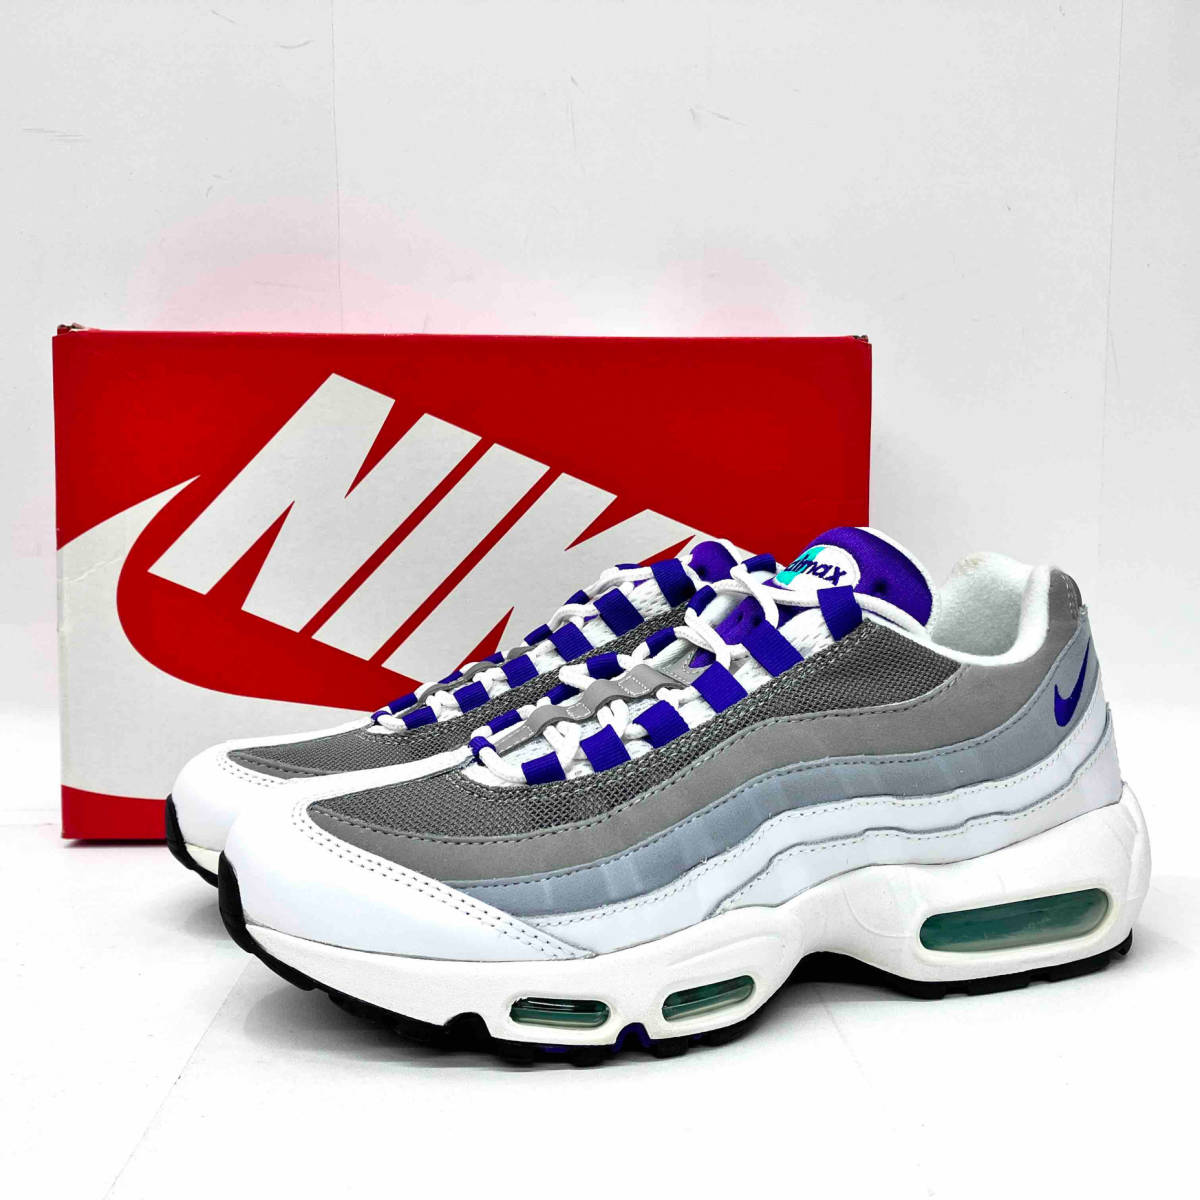 Nike WMNS Air Max 95 White/Court Purple ナイキ ウィメンズ エア マックス95 ホワイト/コートパープル 307960-109 サイズ27.0cm